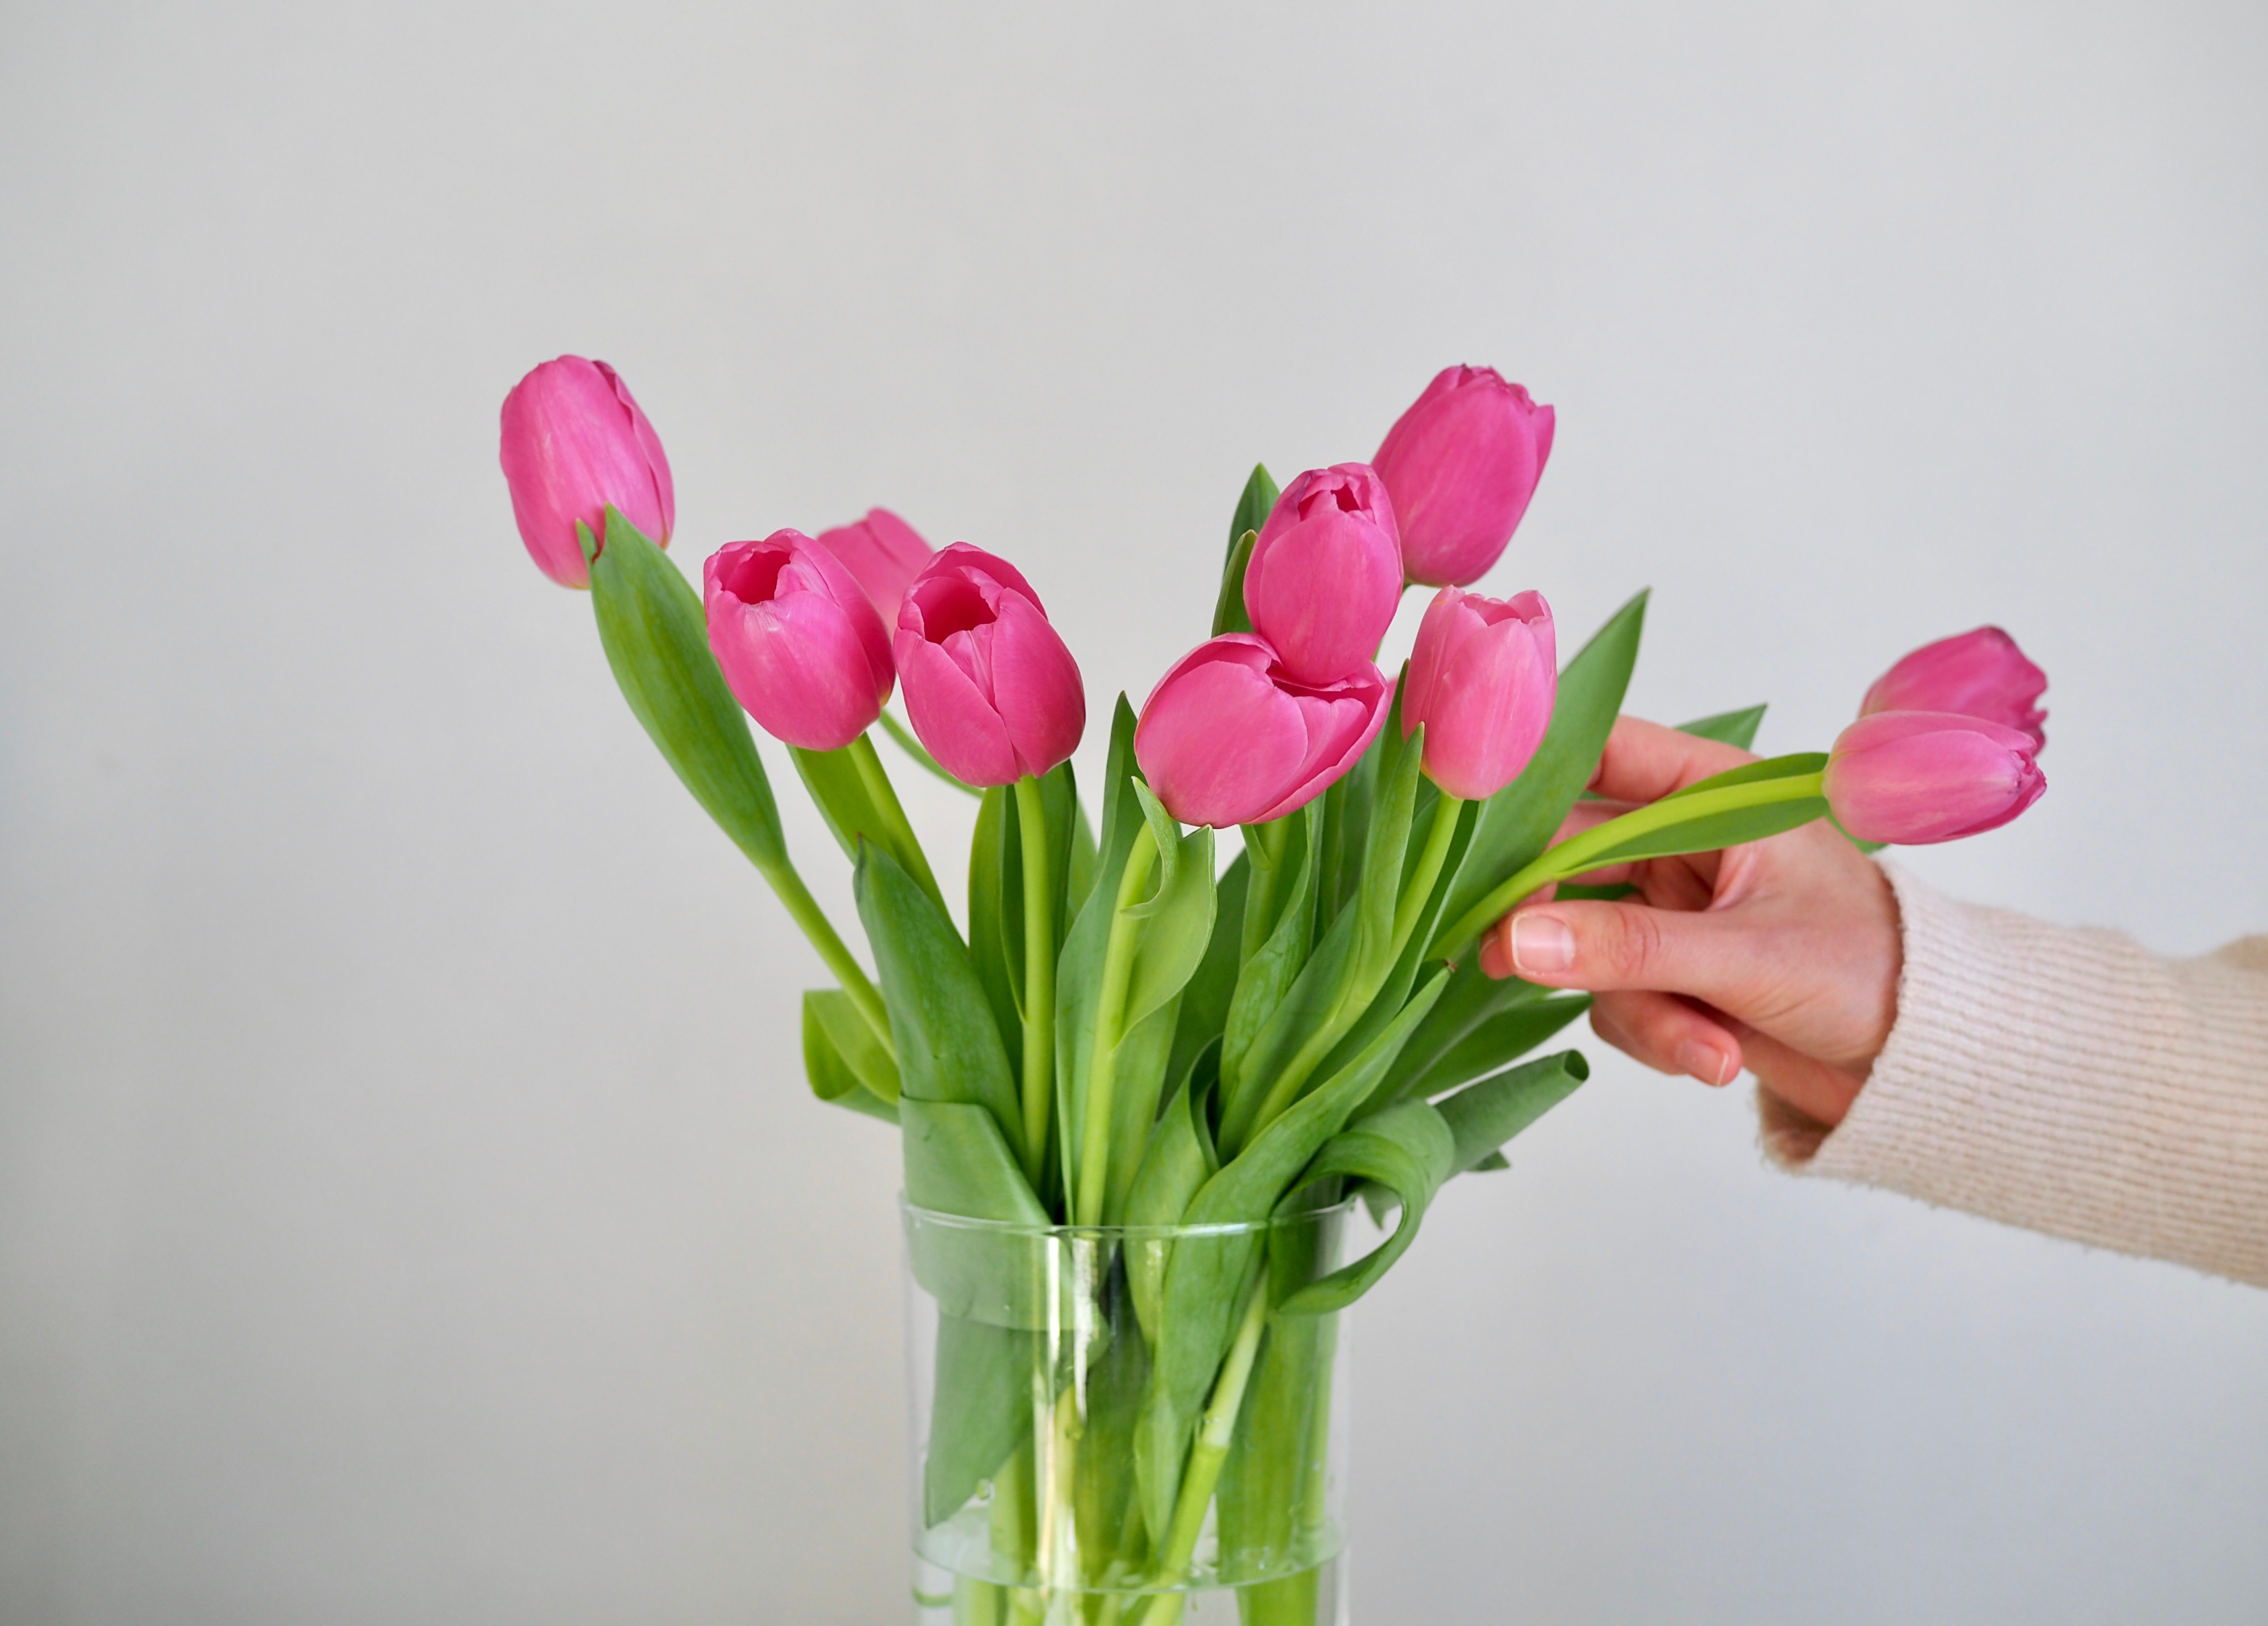 Néhány apró trükk, hogy a tulipán szép maradjon - Blikk